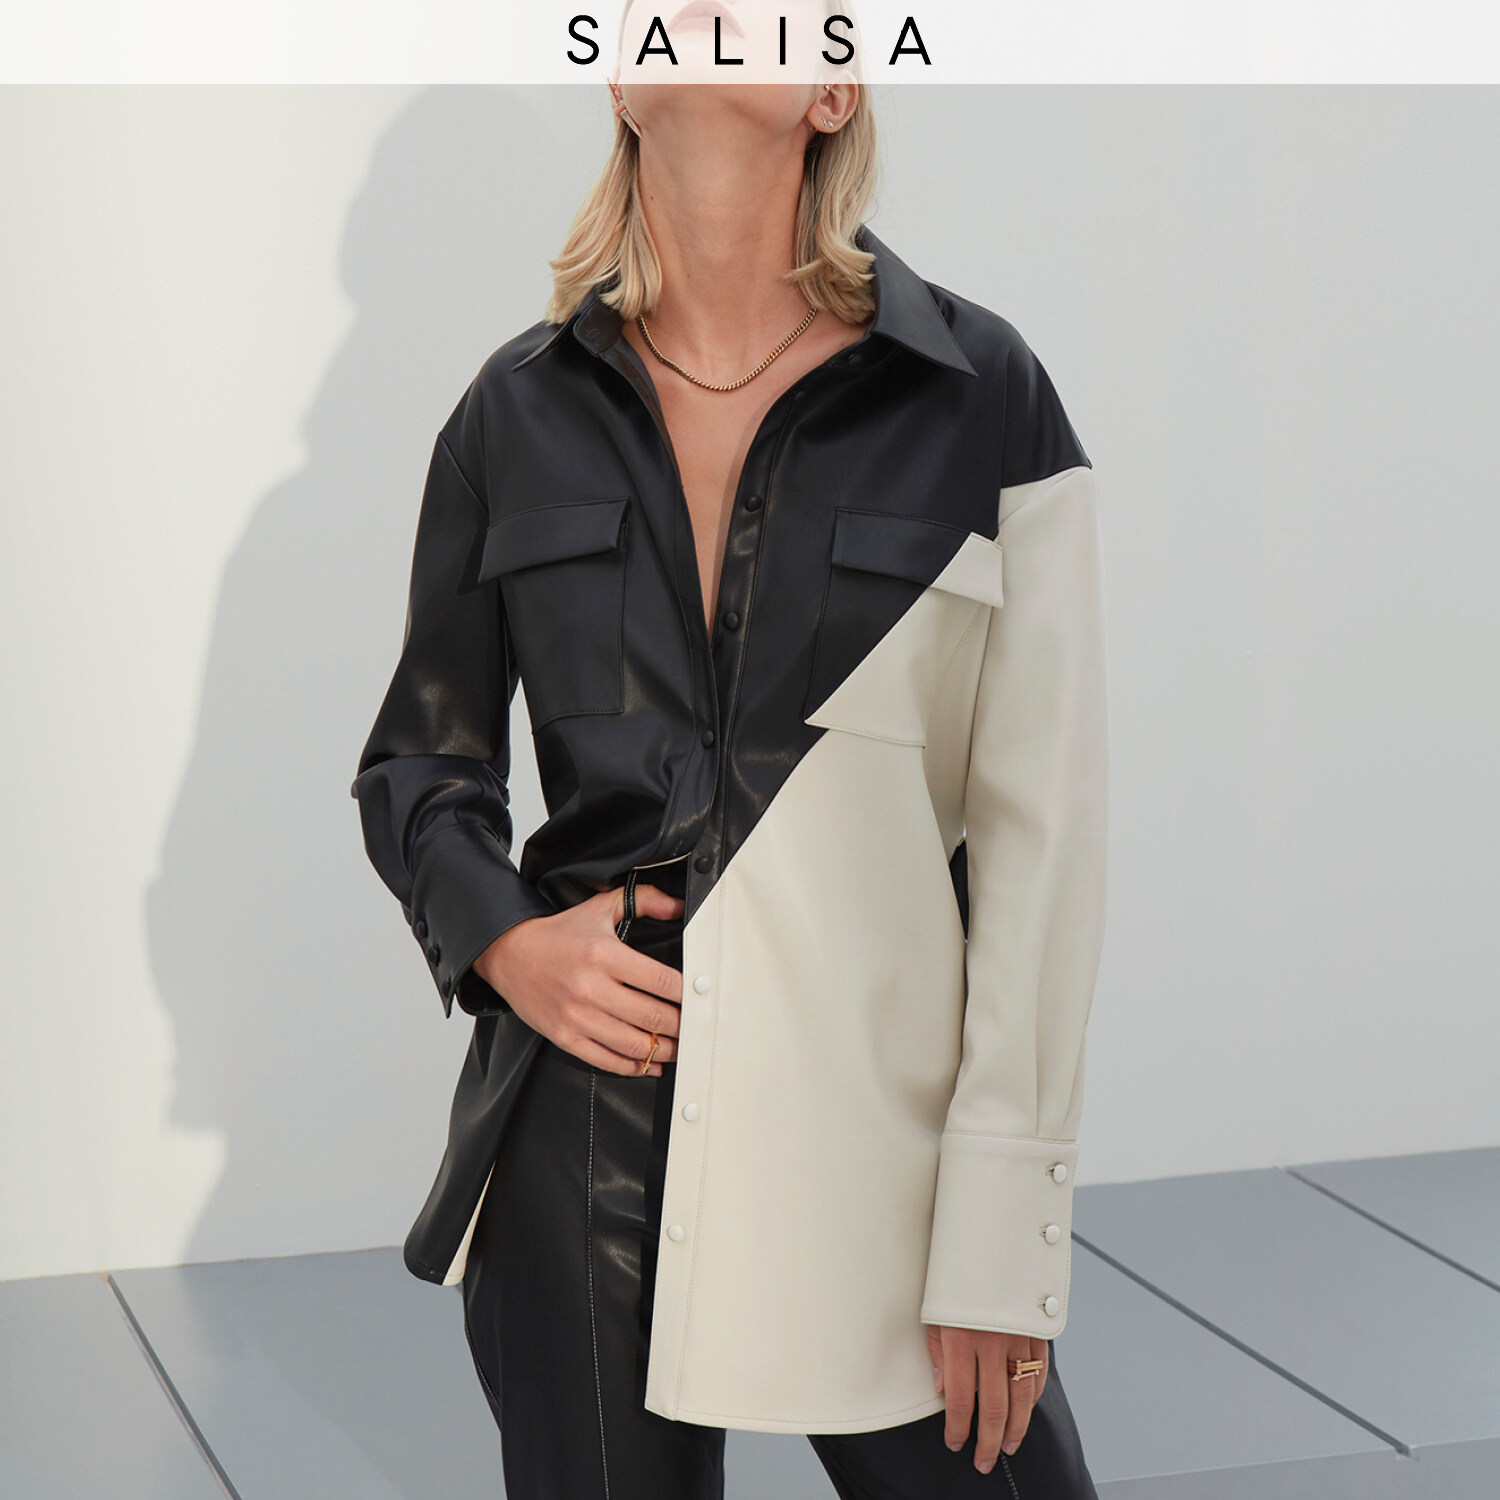 SALISA - SHIRT JACKET vegan leather (PRE-ORDER 1 week)